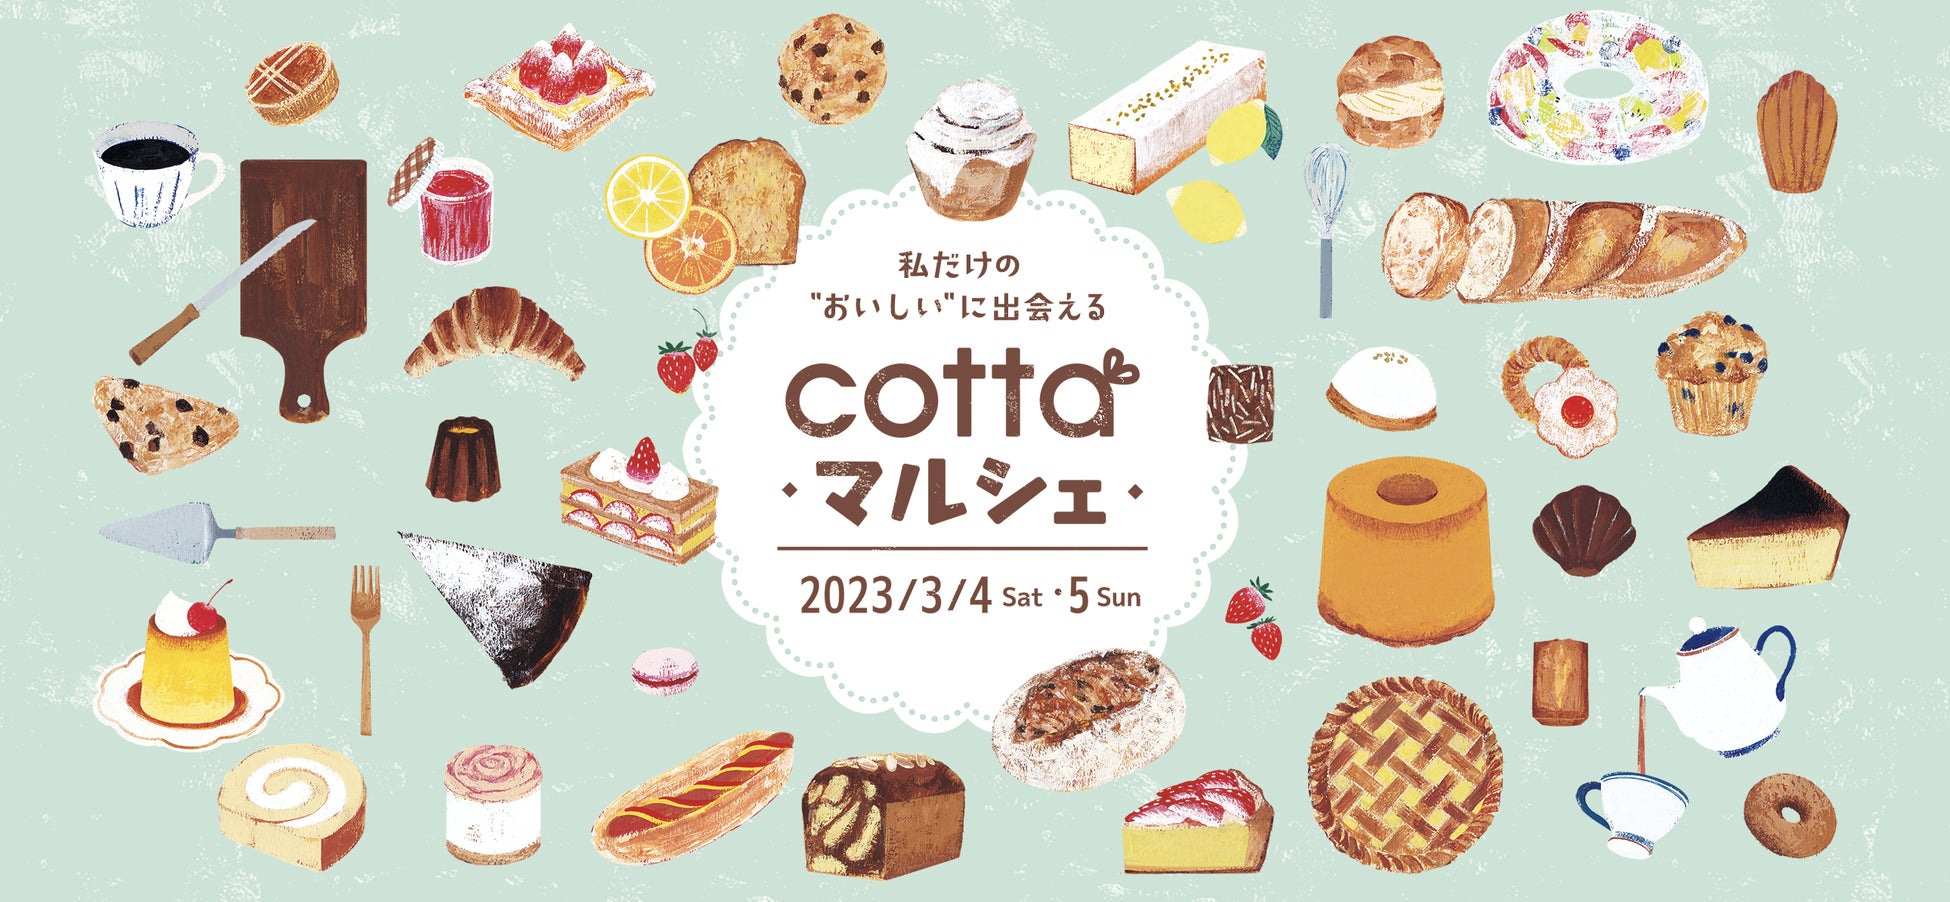 日本最大級のお菓子とパンの祭典「コッタマルシェ」全国から約600店舗が集結し、3月4・5日にいよいよ開催！